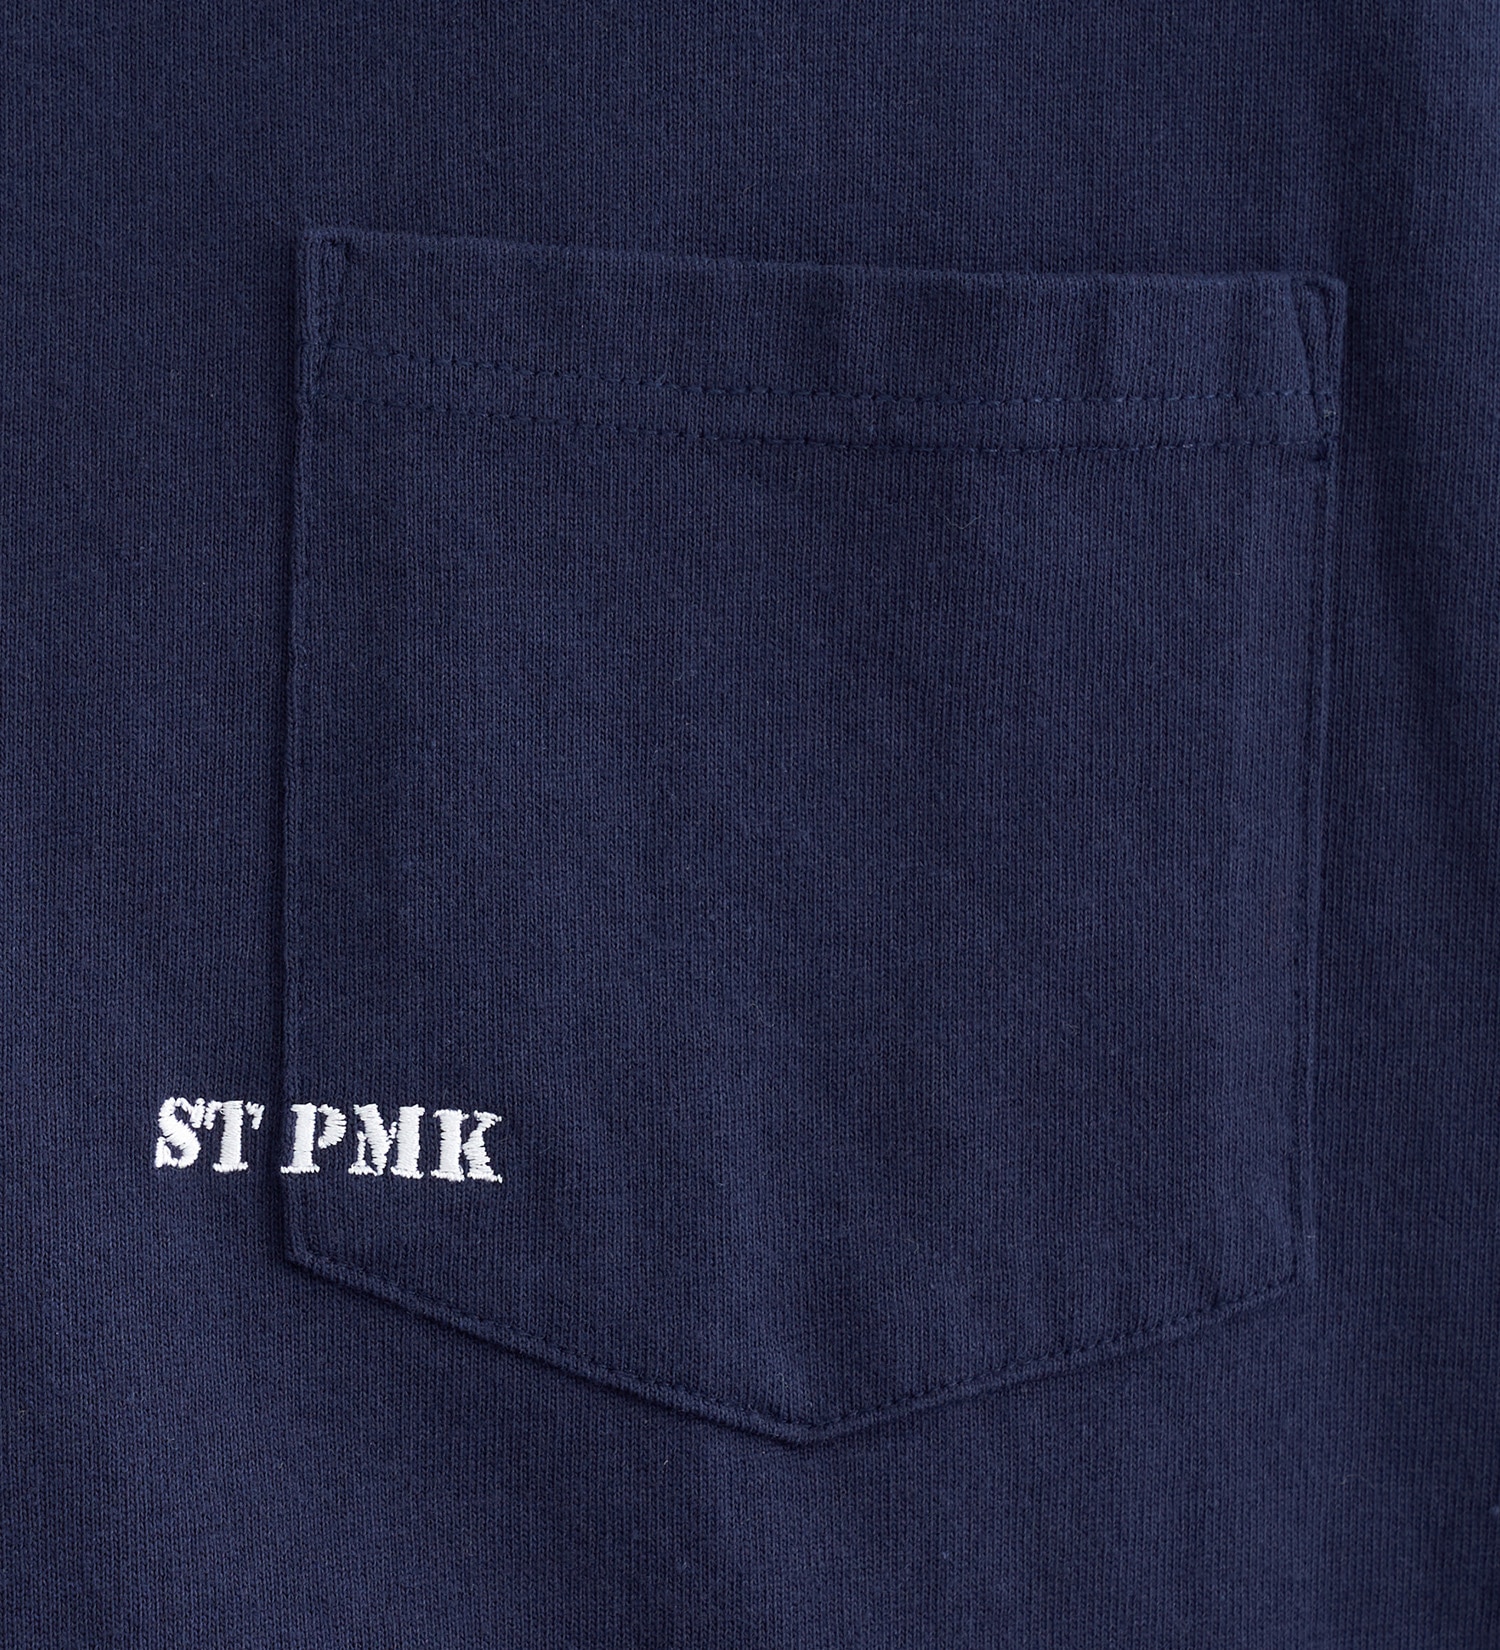 EDWIN(エドウイン)の【BLACKFRIDAY】【WEB限定】EDWIN STEPMARK ワイドボディポケット半袖Tシャツ|トップス/Tシャツ/カットソー/メンズ|ネイビー2